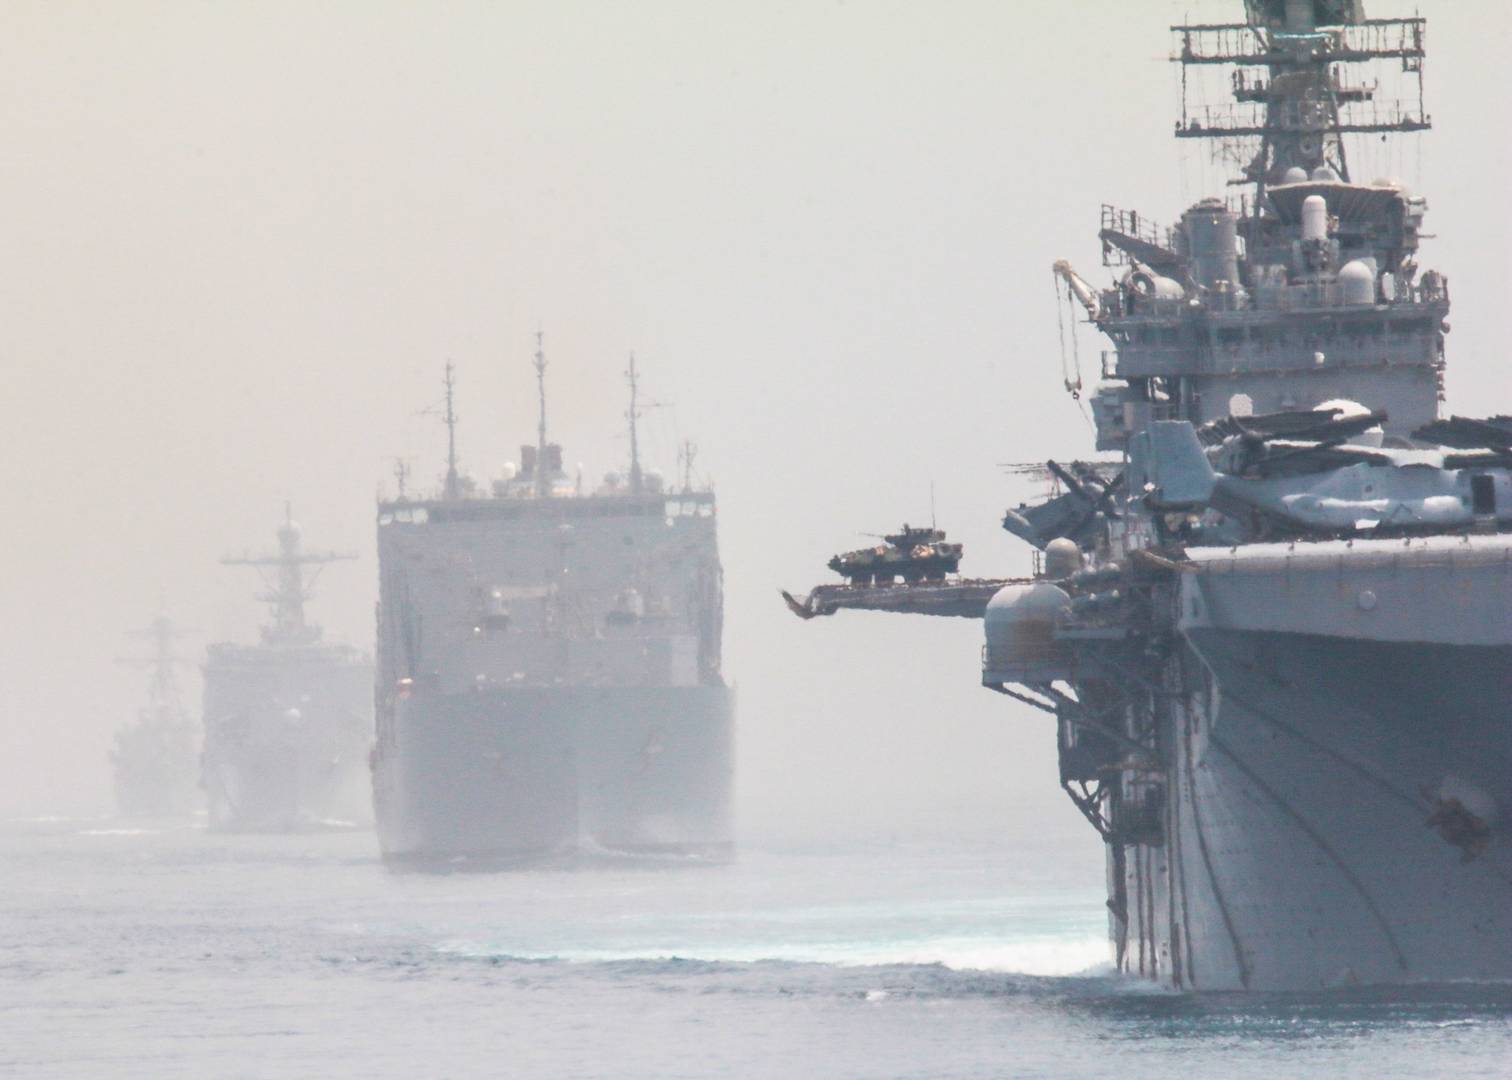 Американские корабли 5-го флота демонстрируют доминирование США в Красном море